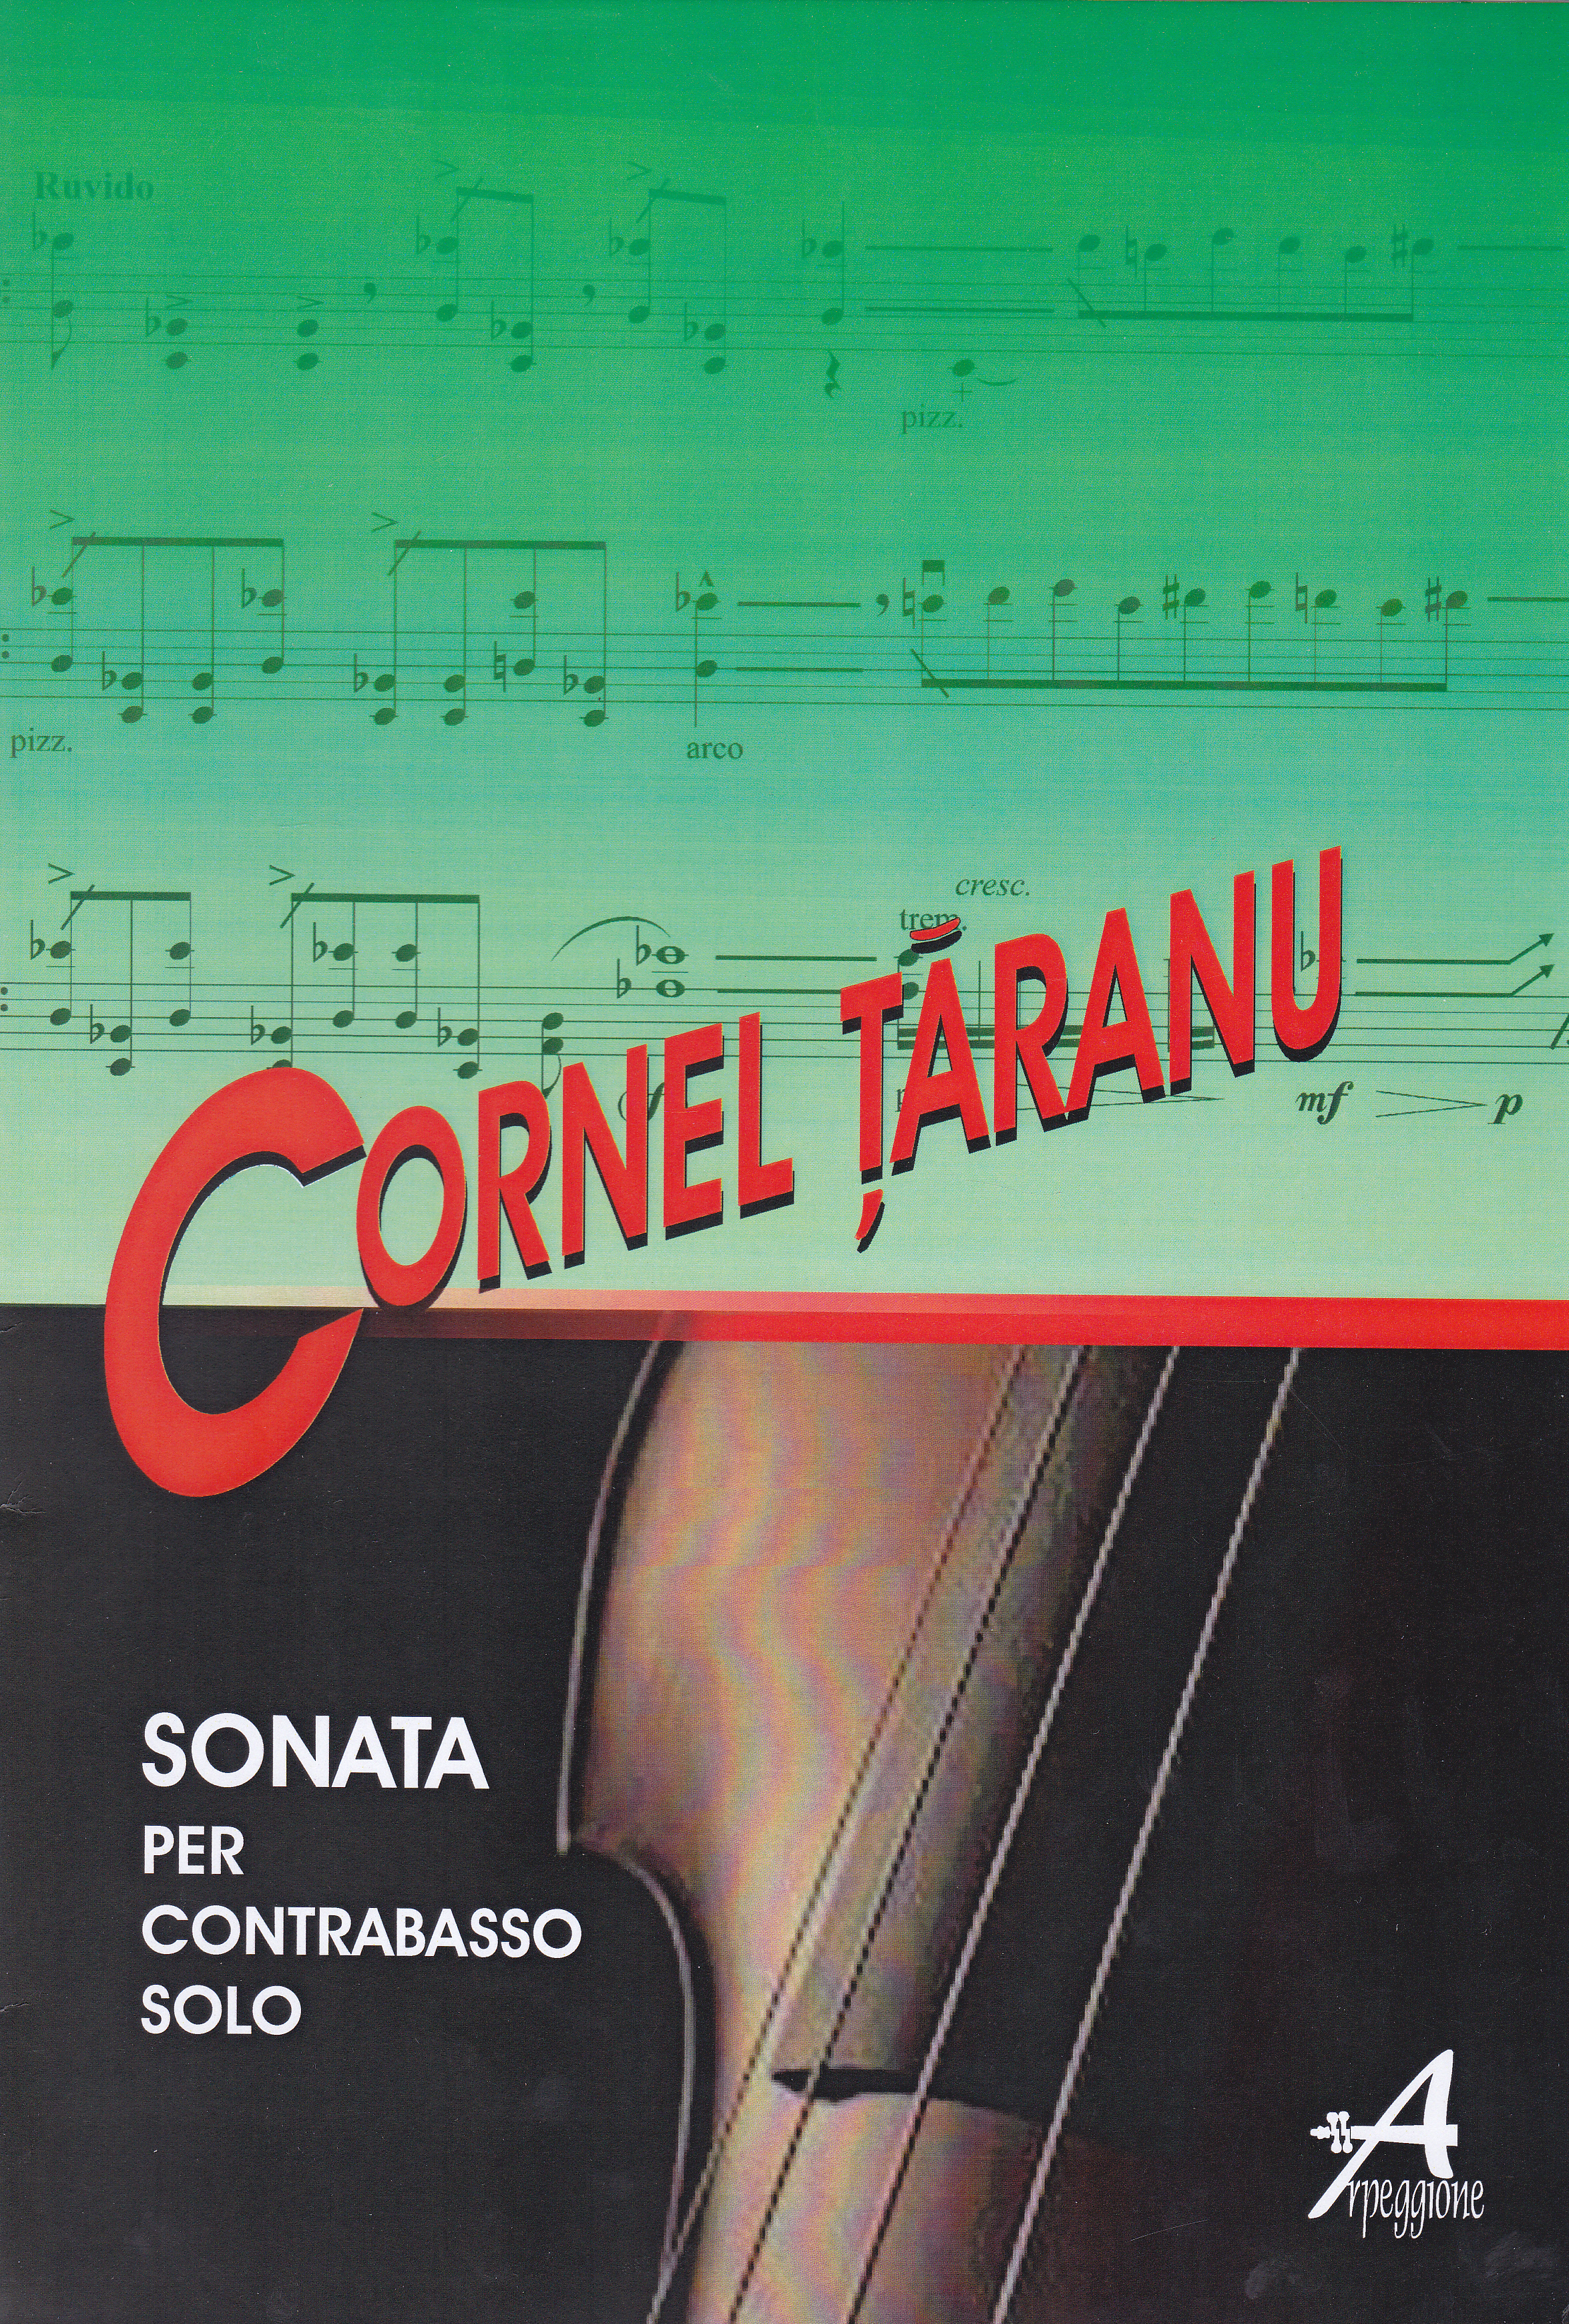 Sonata per Contrabasso Solo - Cornel Taranu